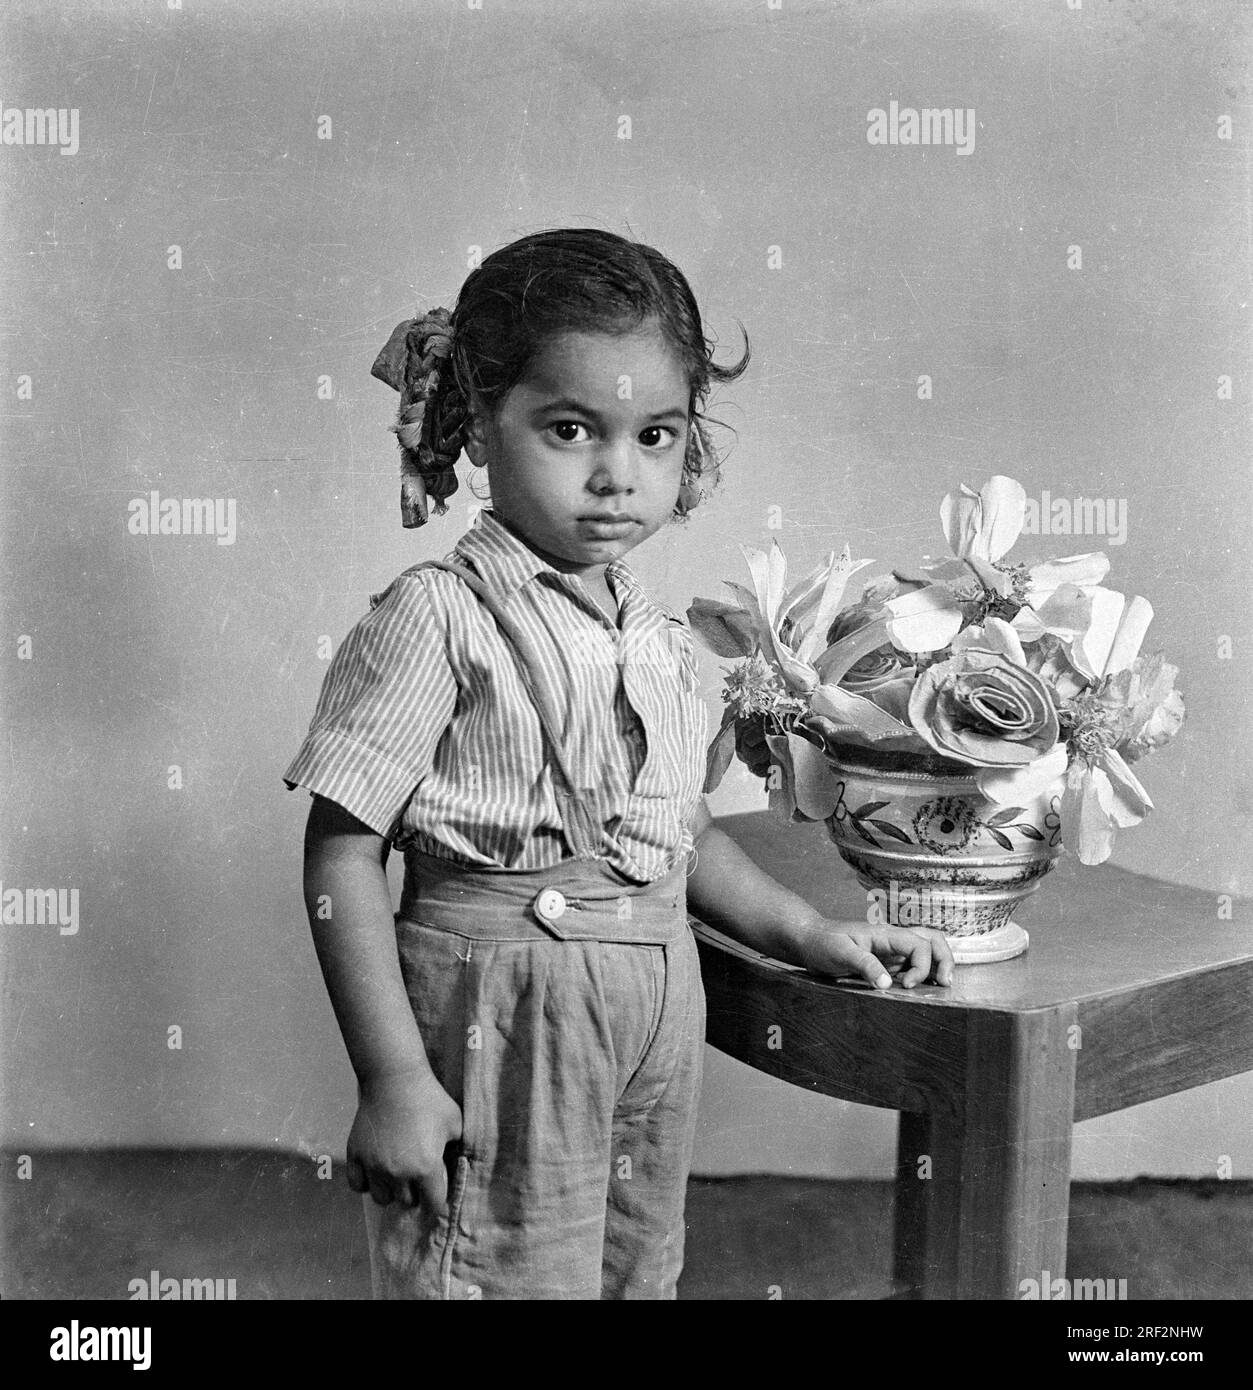 Vieux vintage des années 1900 noir et blanc portrait studio de bébé fille indienne enfant portant pantalon chemise debout fleurs artificielles tabouret Inde des années 1940 Banque D'Images